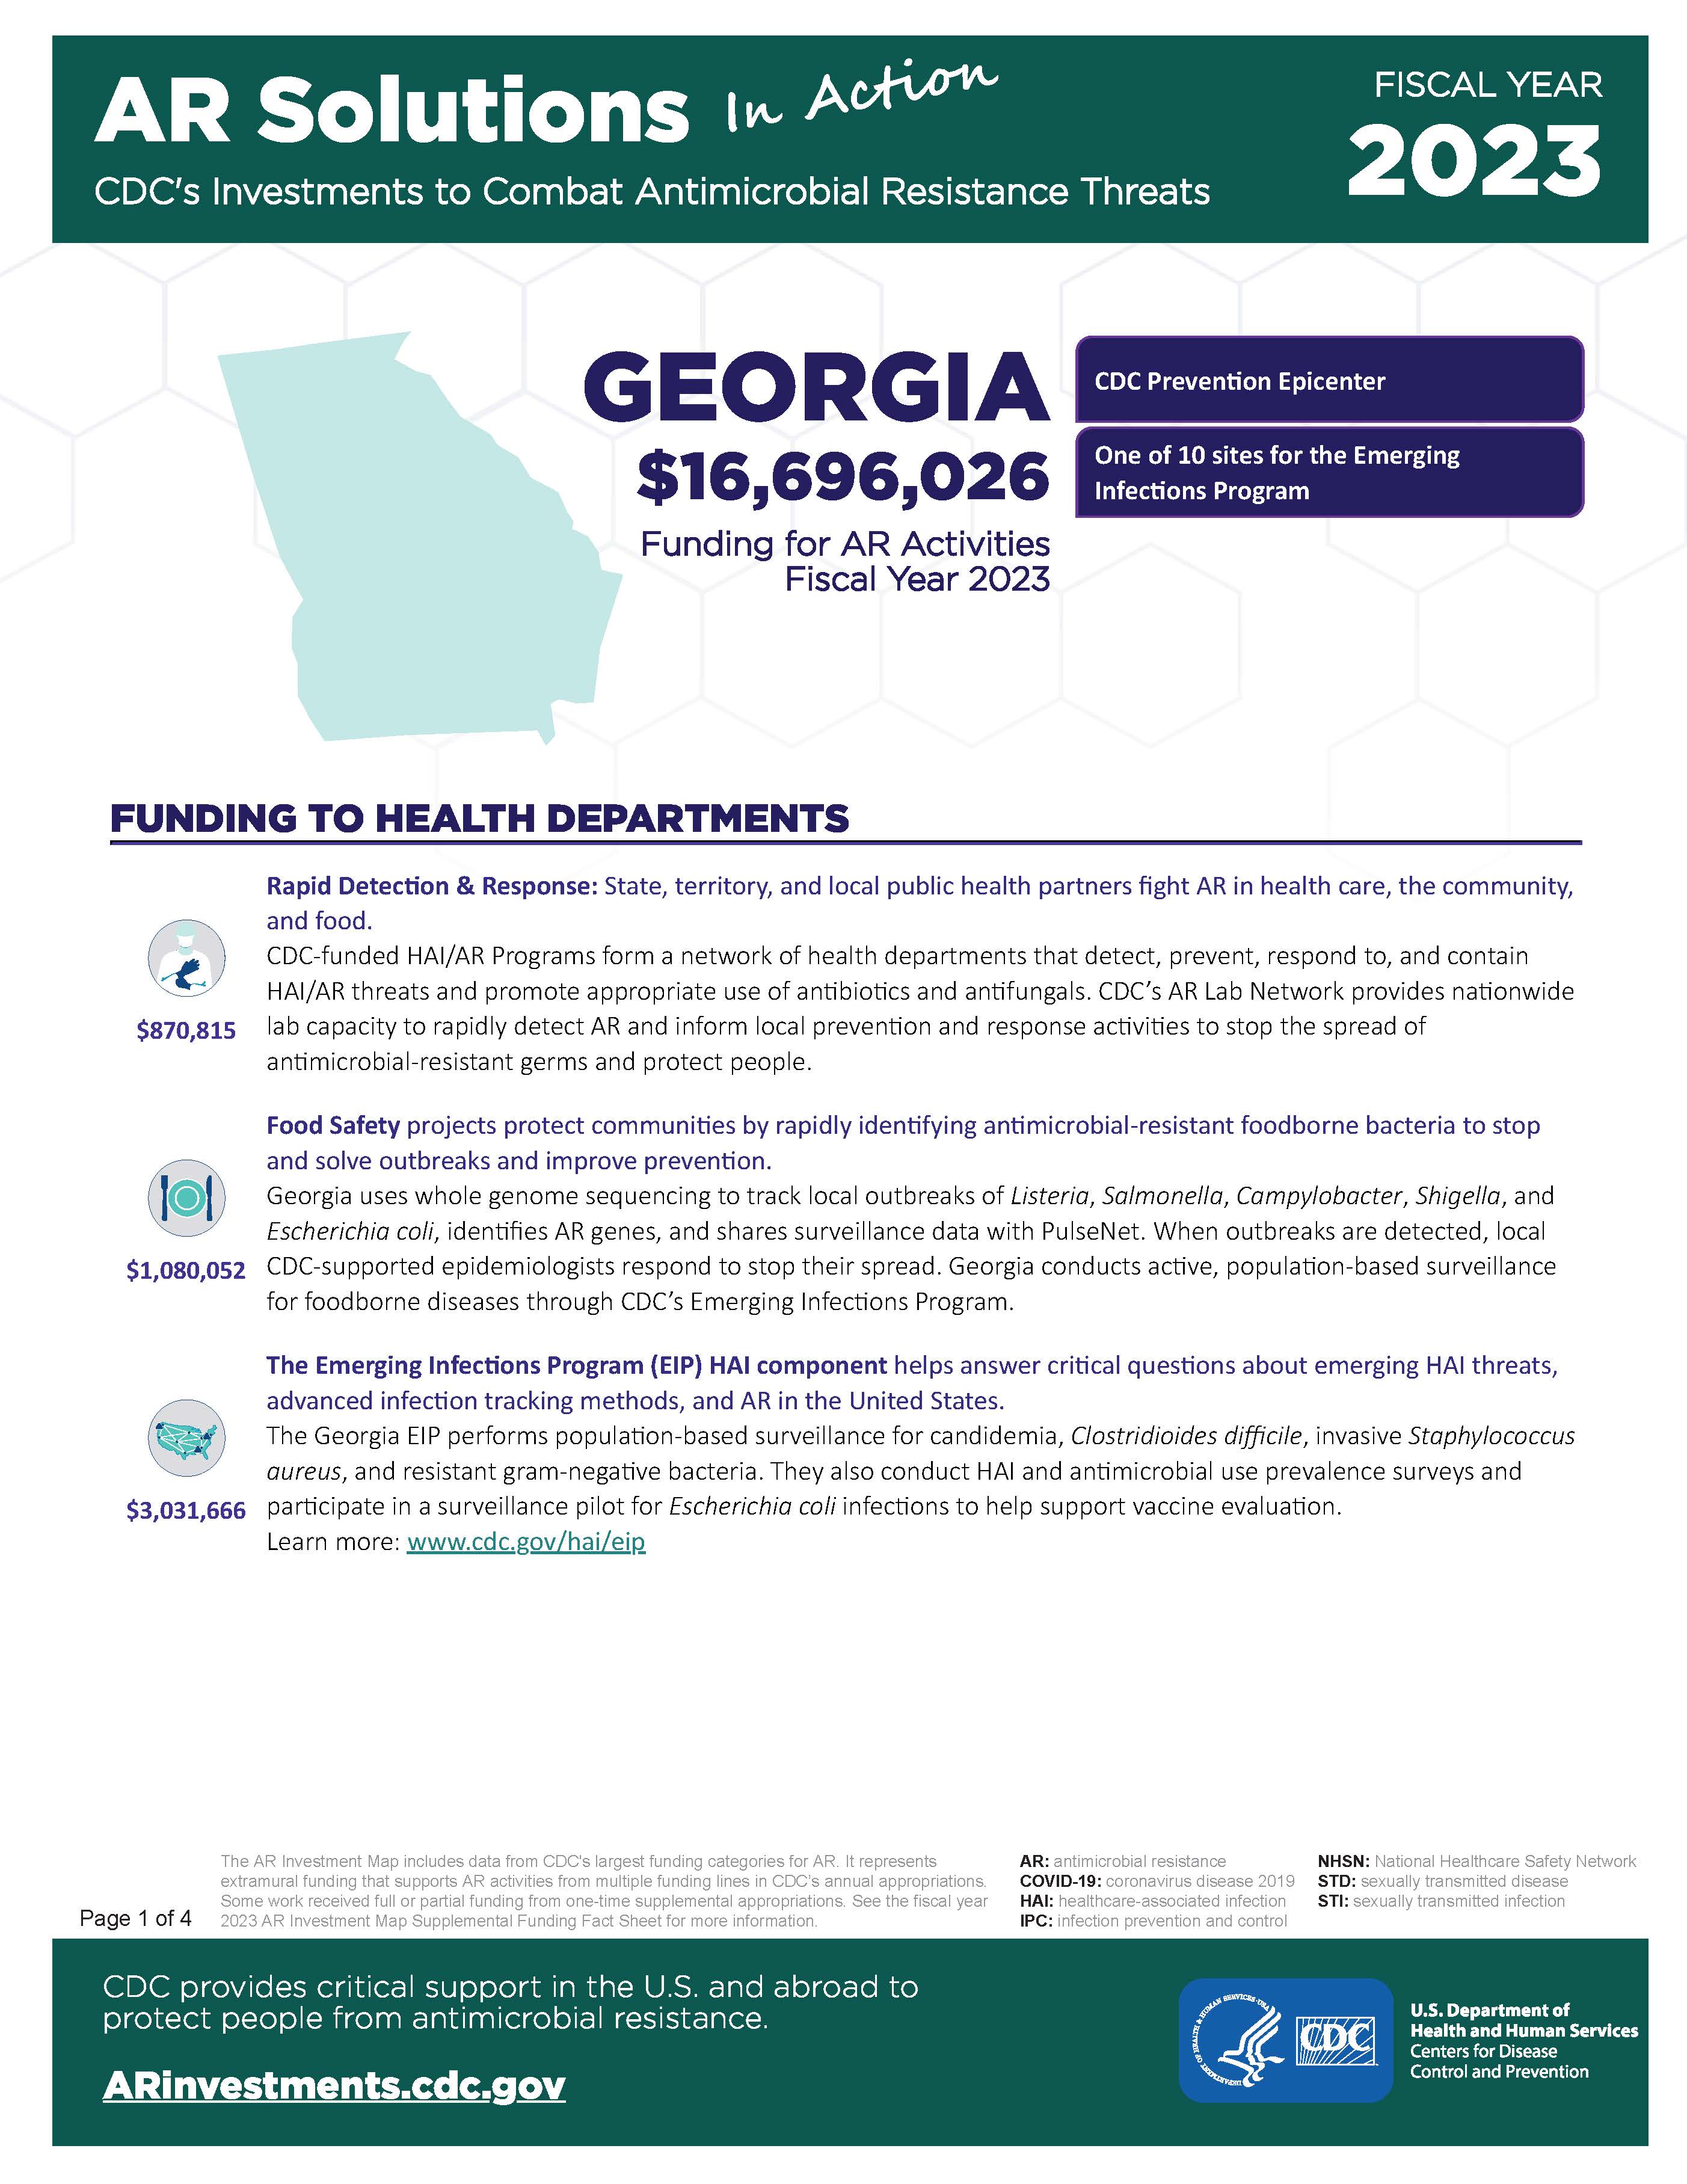 View Factsheet for Georgia